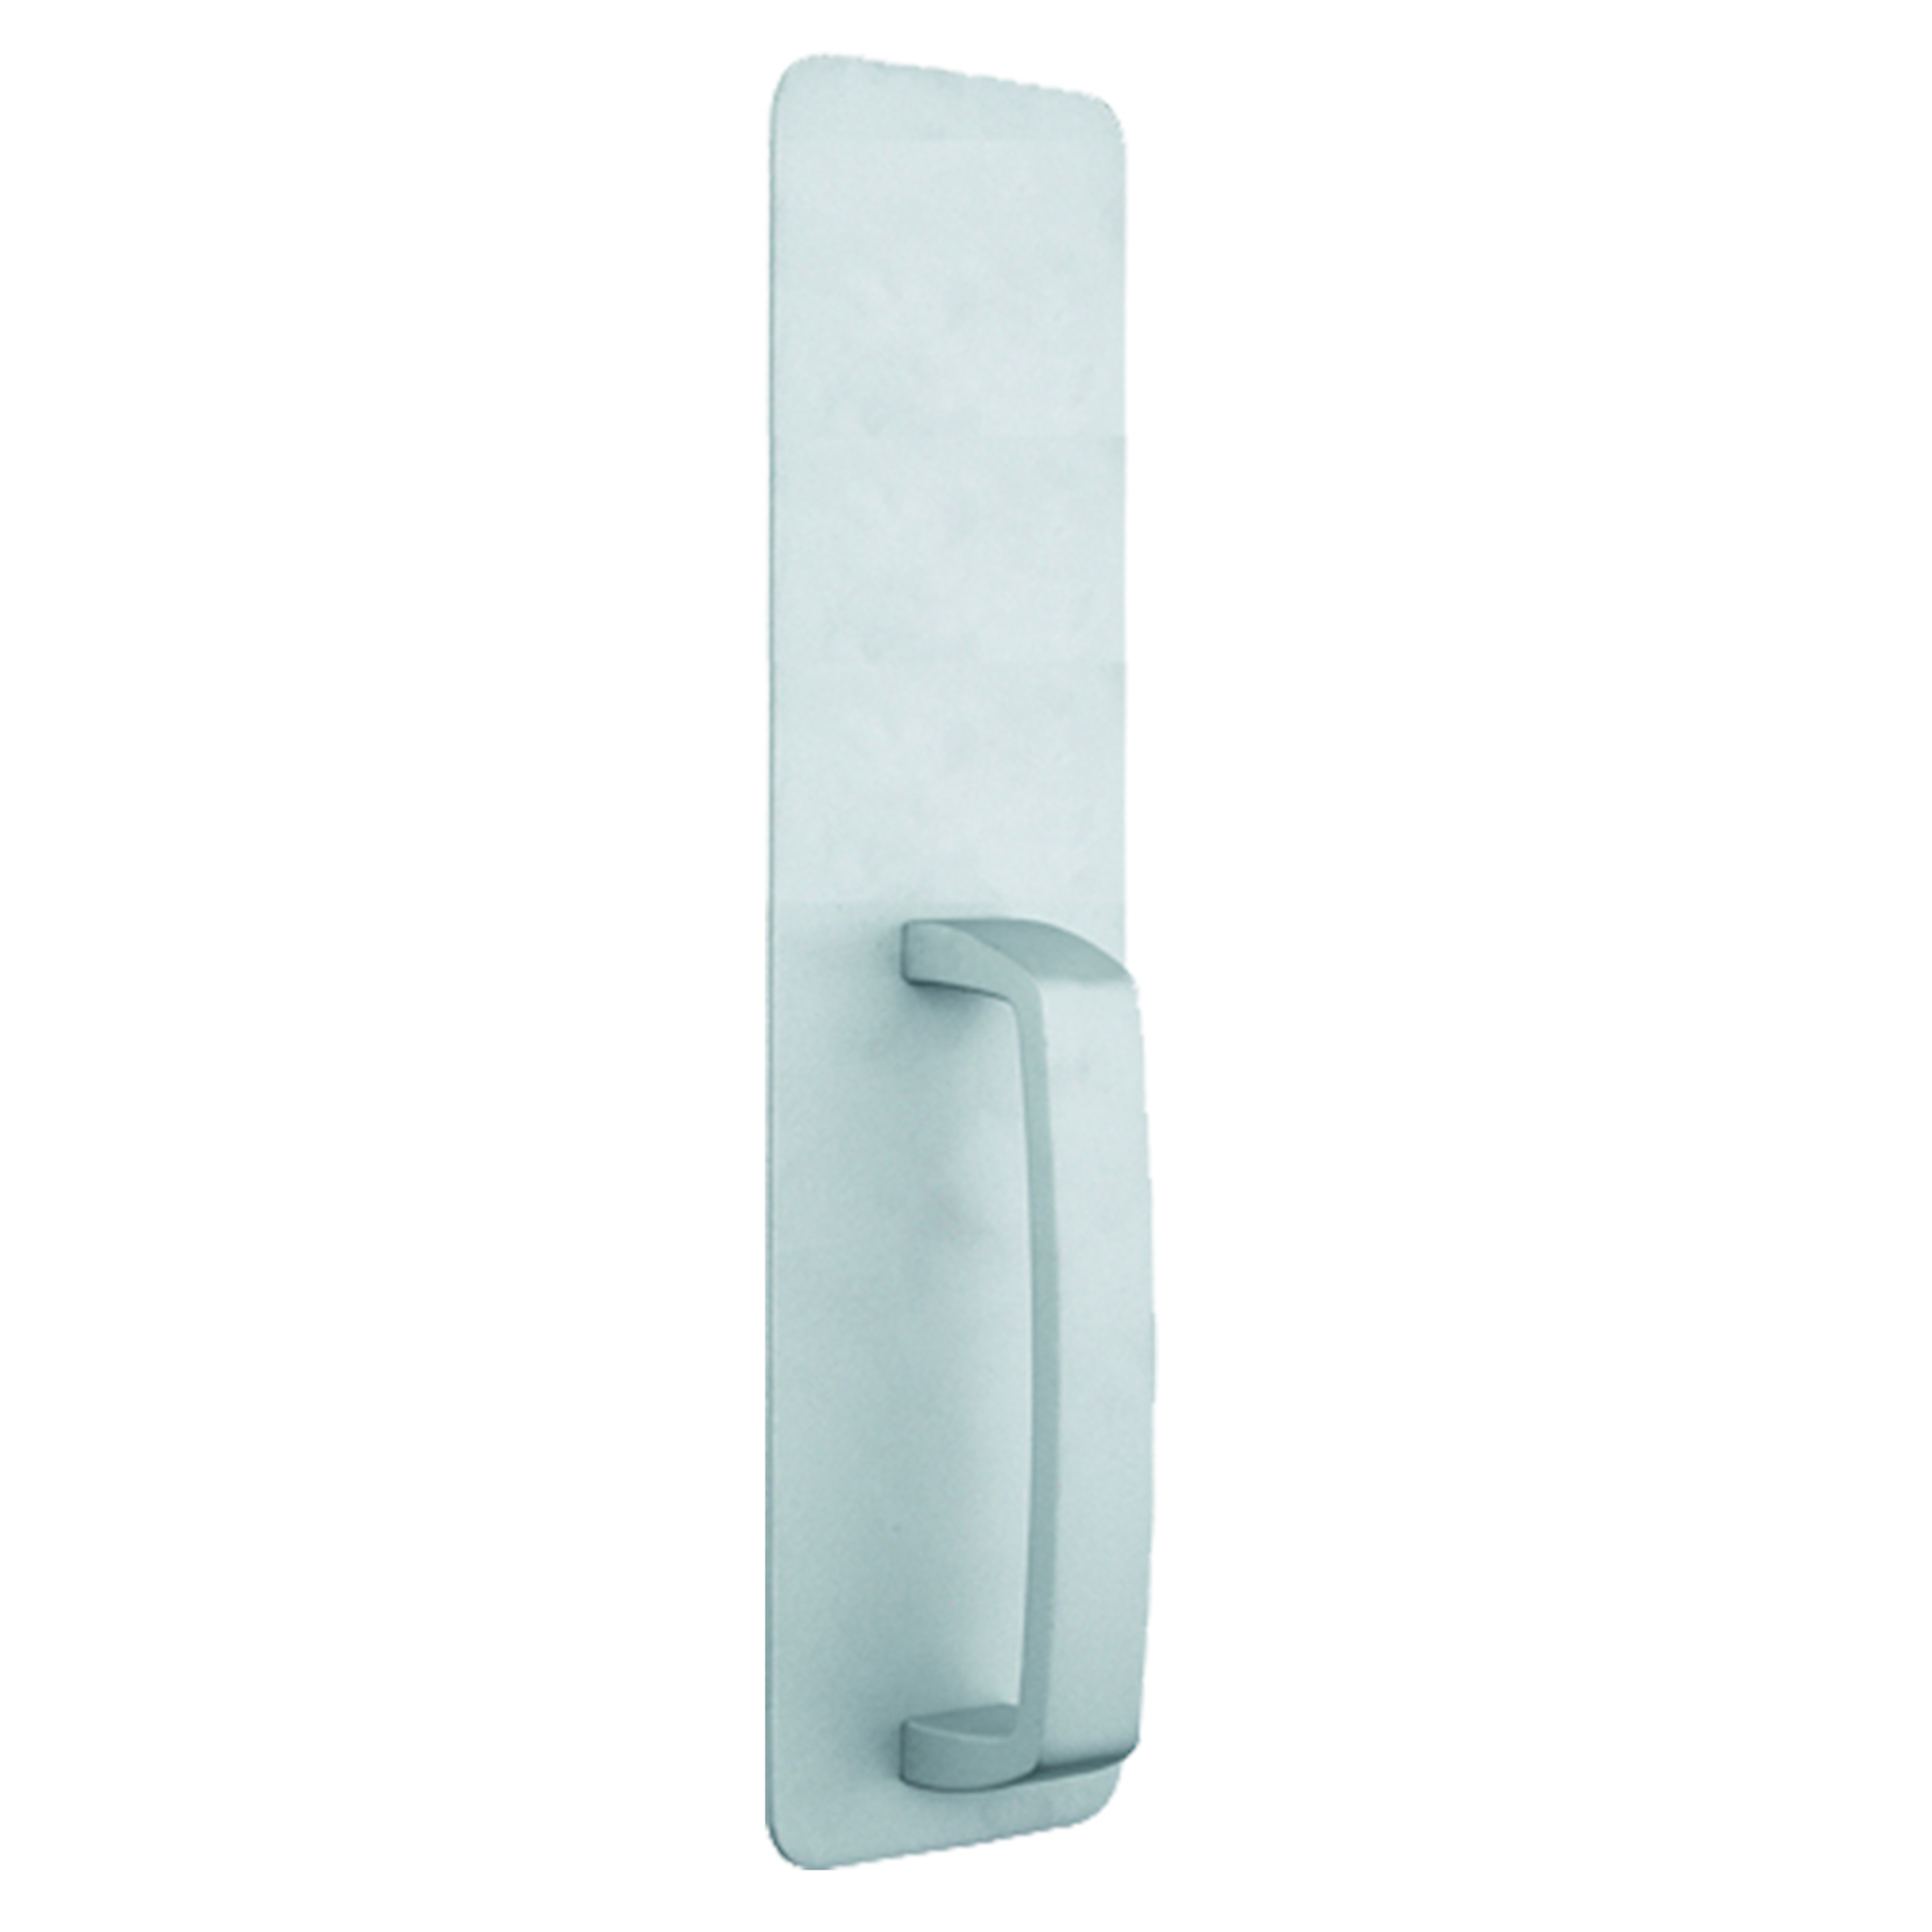 Global Door Controls, Aluminum Dummy Handleset Trim for Exit Devices, Max. Fits Door Width 48 in, MInch Fits Door Width 30 in, Model TH1100-DUMEDAL